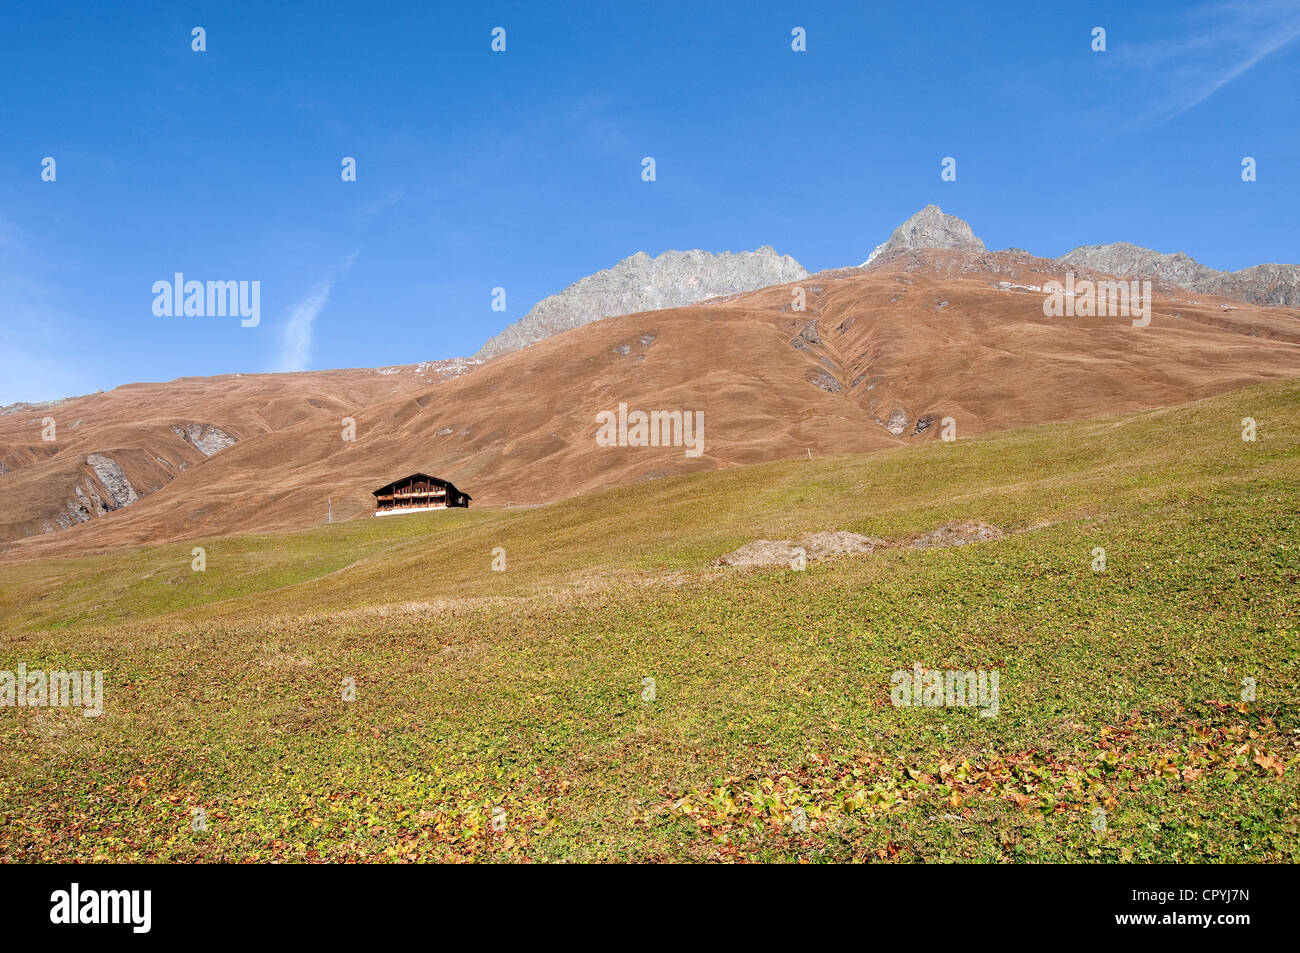 La Svizzera del Cantone dei Grigioni, Juf, il più alto permanentemente abitato villaggio d'Europa (2200m), isolati chalet Foto Stock